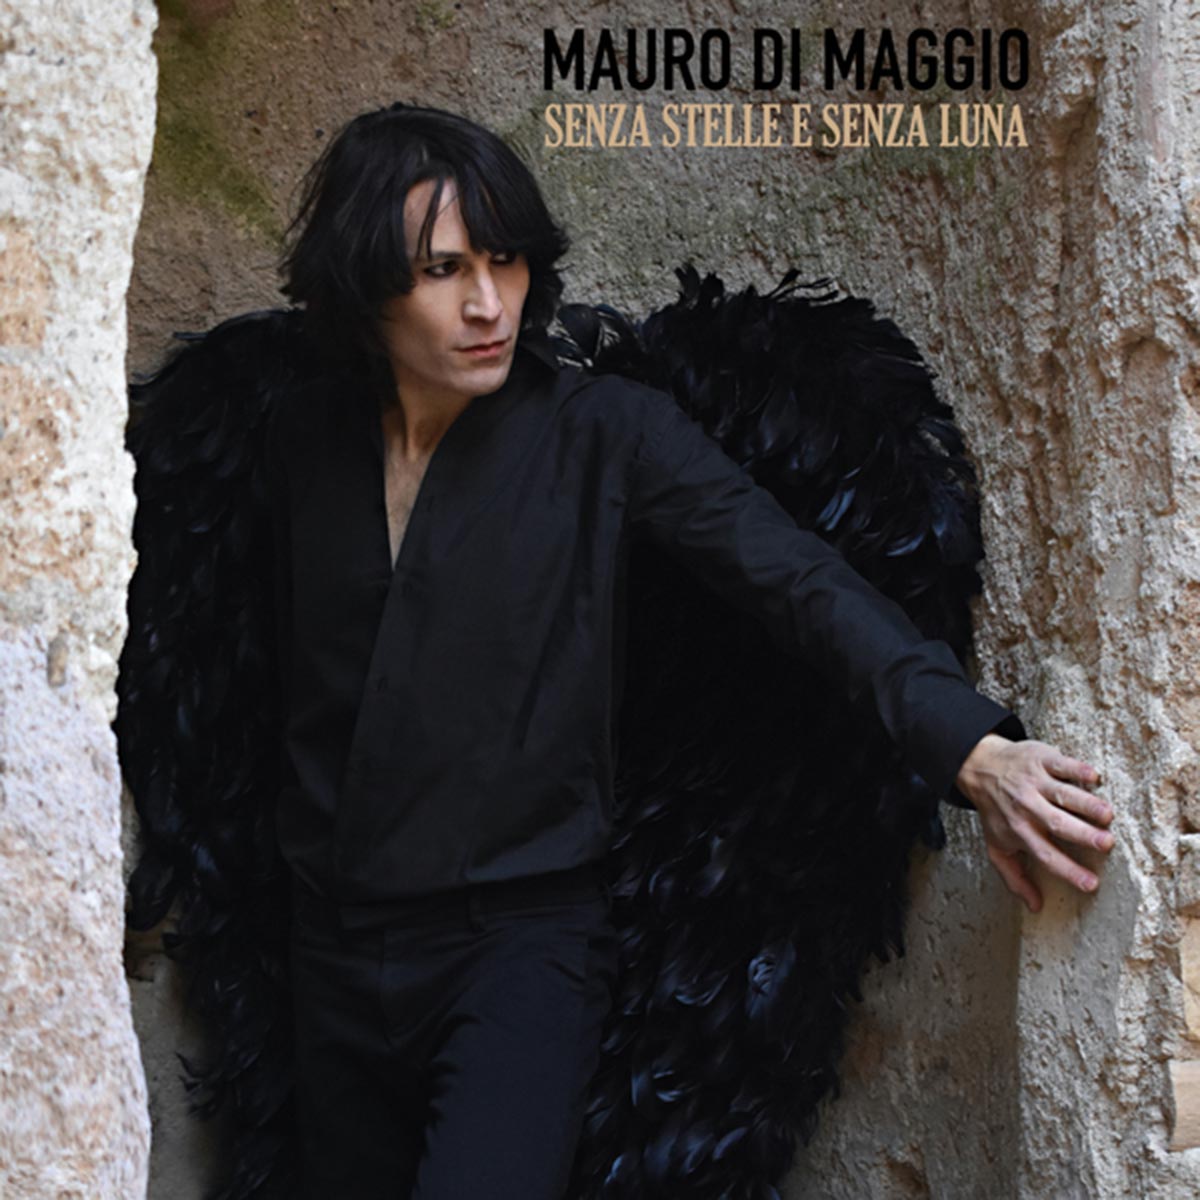 È in radio e sulle piattaforme digitali “Senza Stelle e Senza Luna” il nuovo singolo di Mauro di Maggio